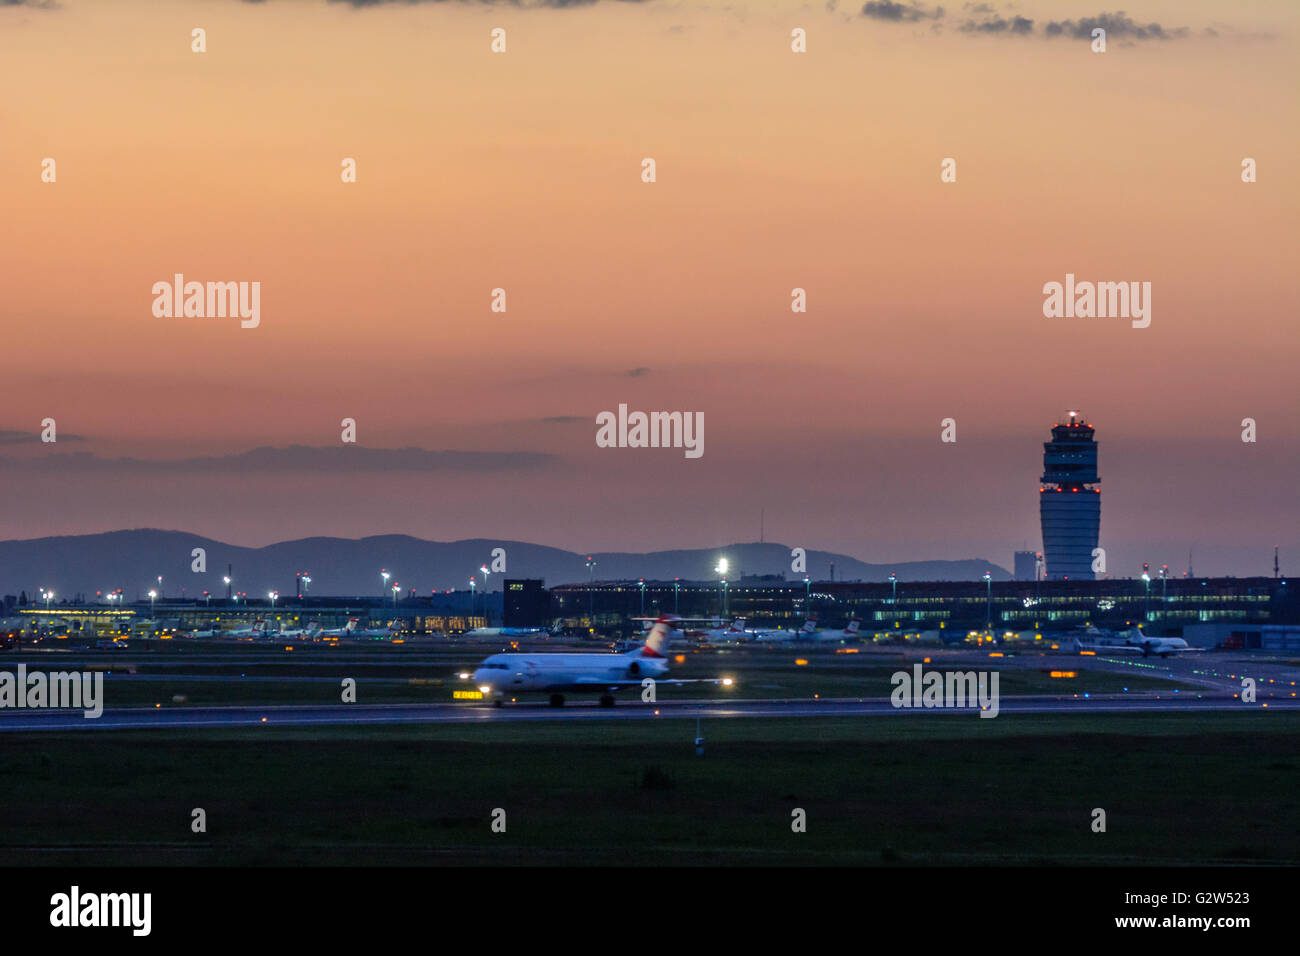 Aeroporto di Vienna : Tower , terminale e aeromobili, Austria, Vienna Wien Foto Stock